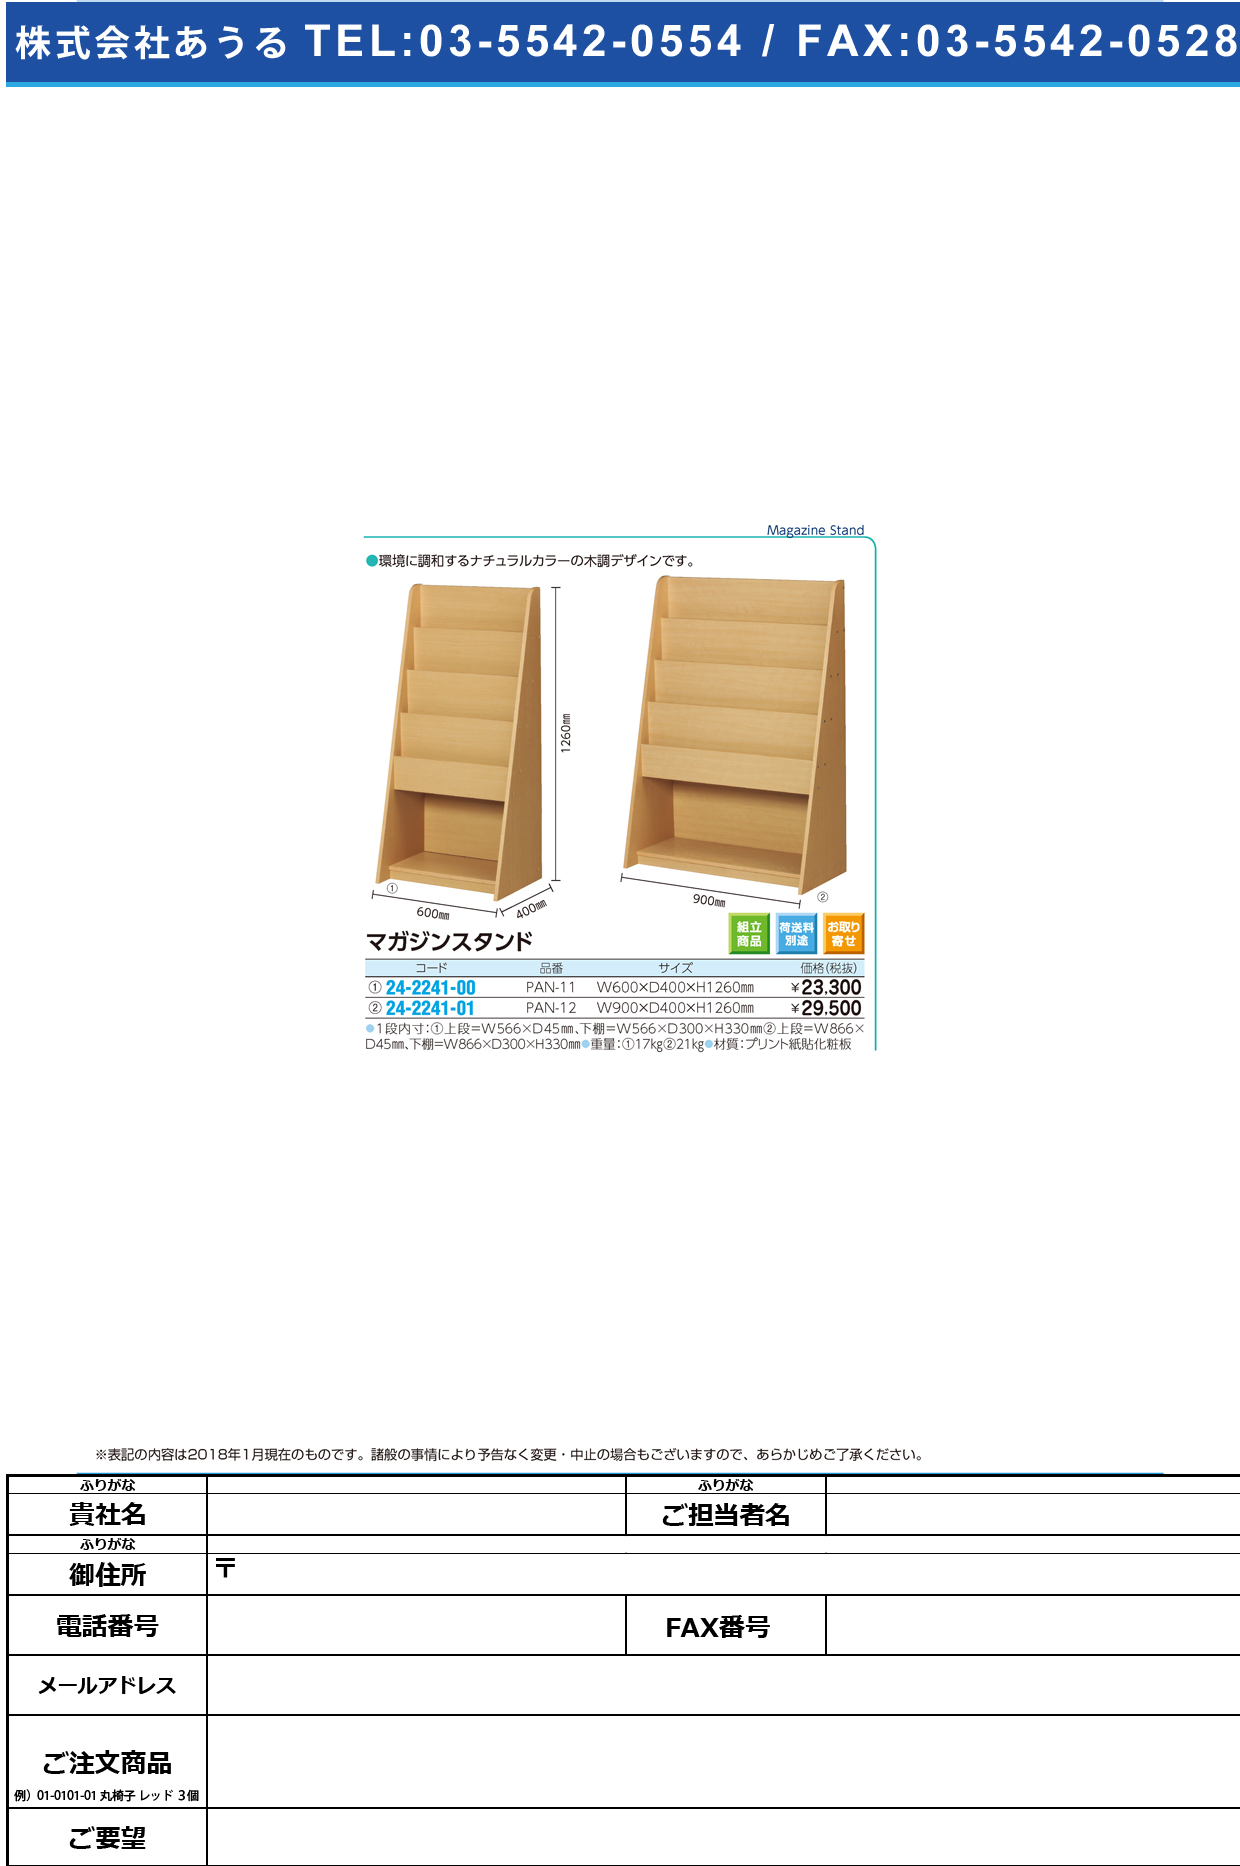 (24-2241-01)マガジンスタンド PAN-12(90X40X126CM) ﾏｶﾞｼﾞﾝｽﾀﾝﾄﾞ【1台単位】【2019年カタログ商品】